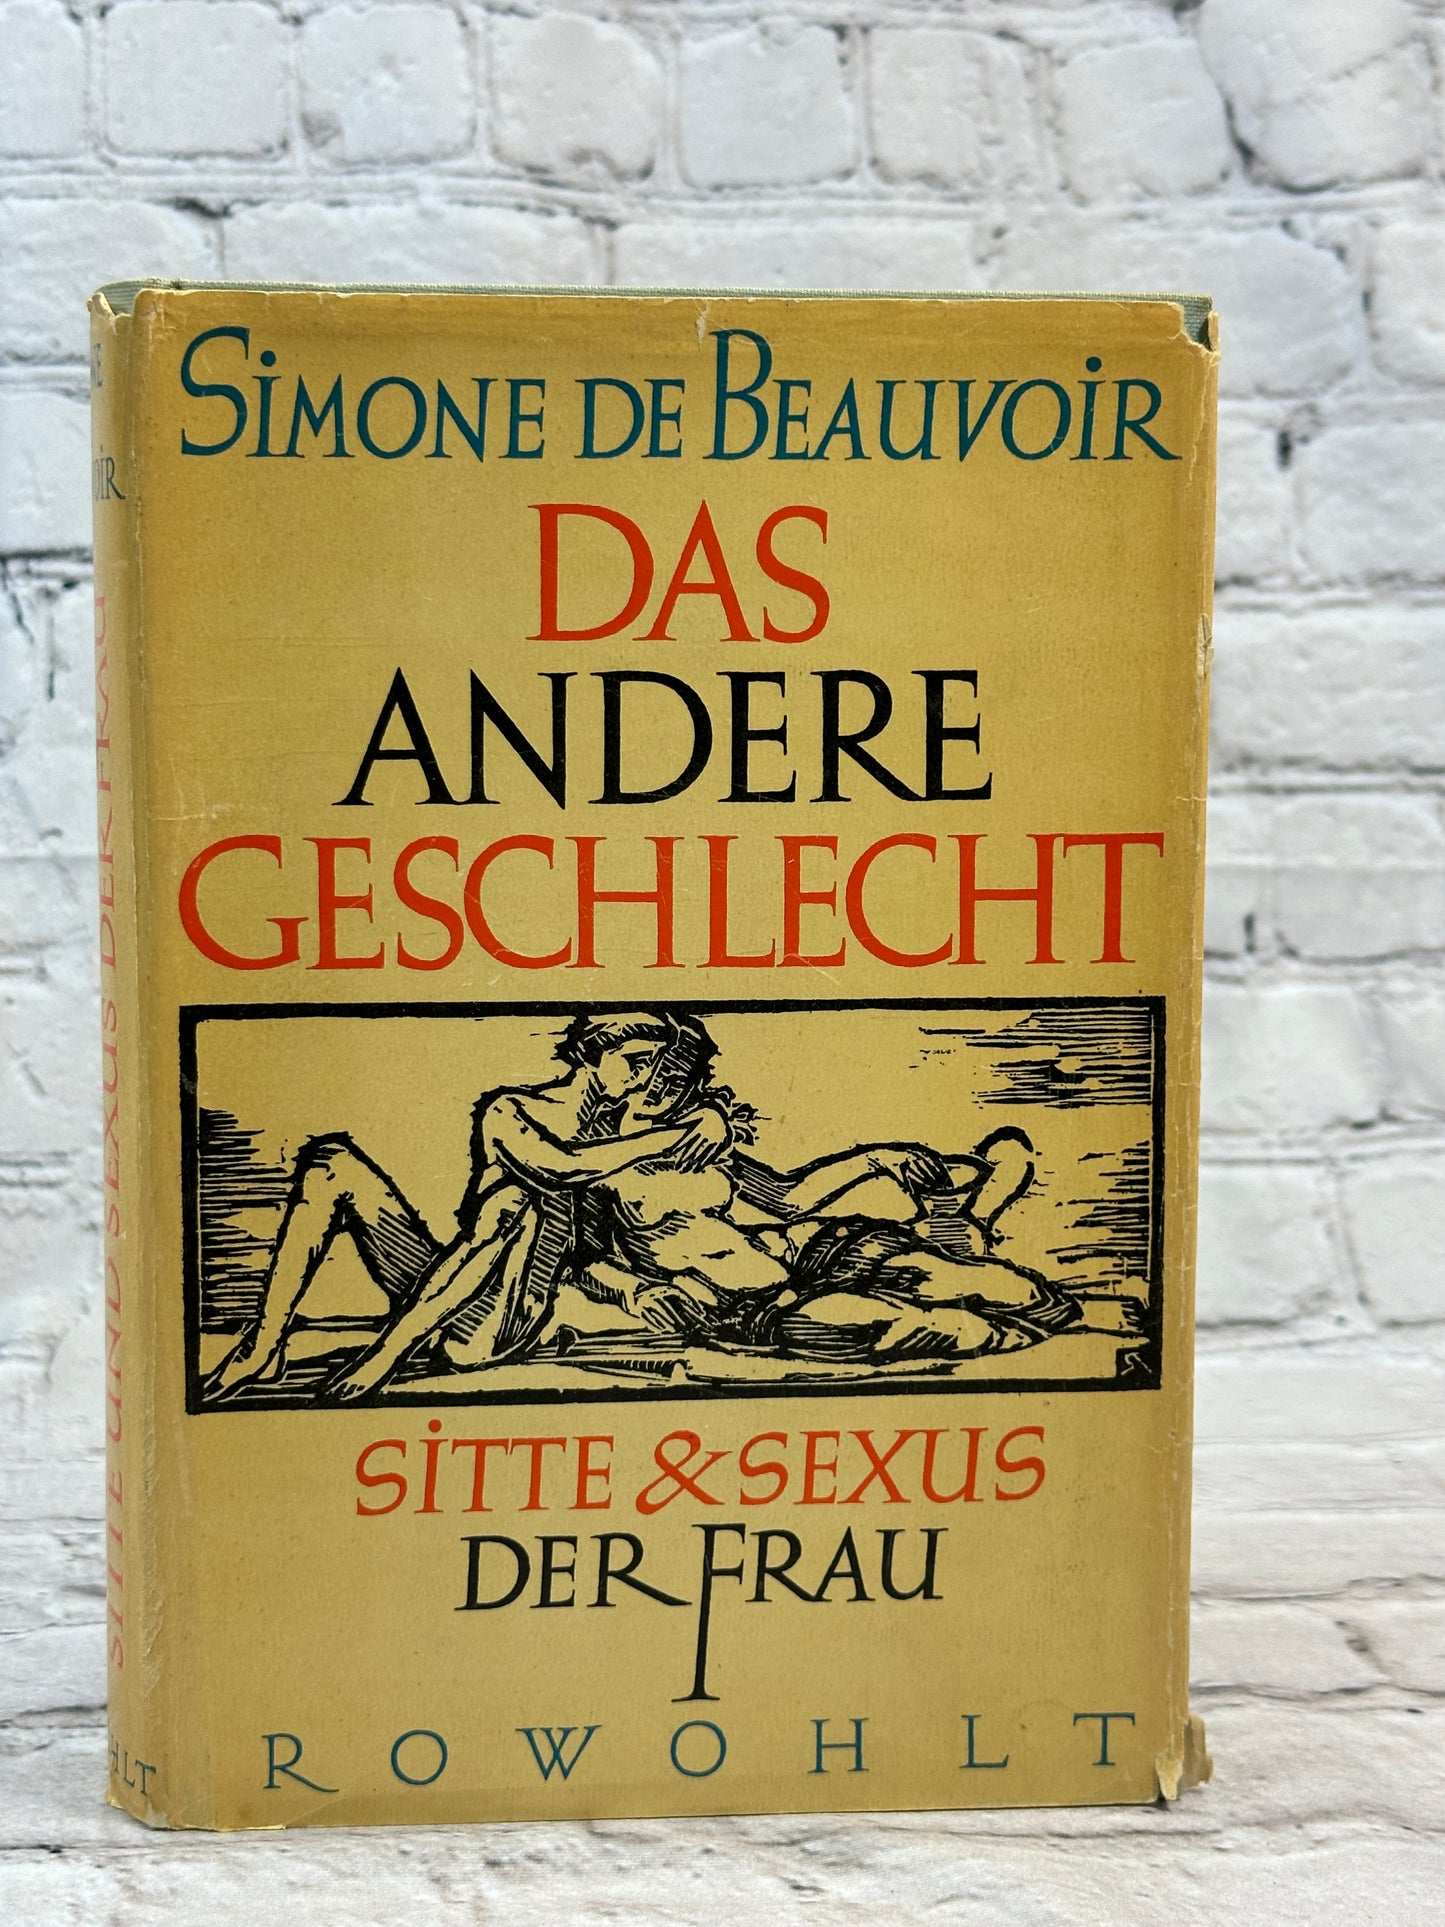 Das Andere Geschlecht by Simone de Beauvoir [1956]